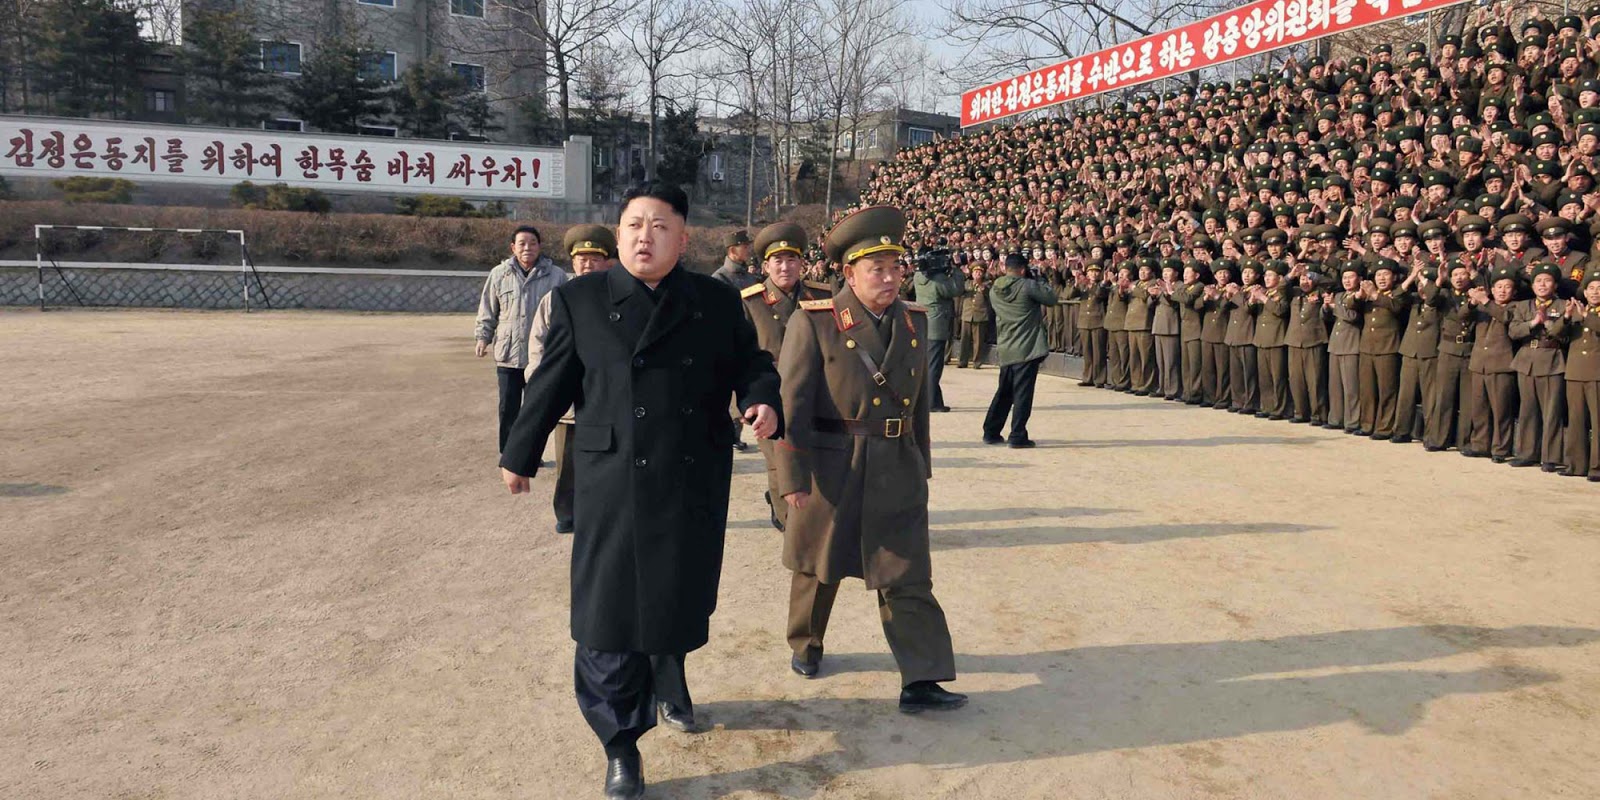 چین کا شمالی کوریا کو جوہری ہتھیاروں کی فروخت نہ کرنے کا فیصلہ